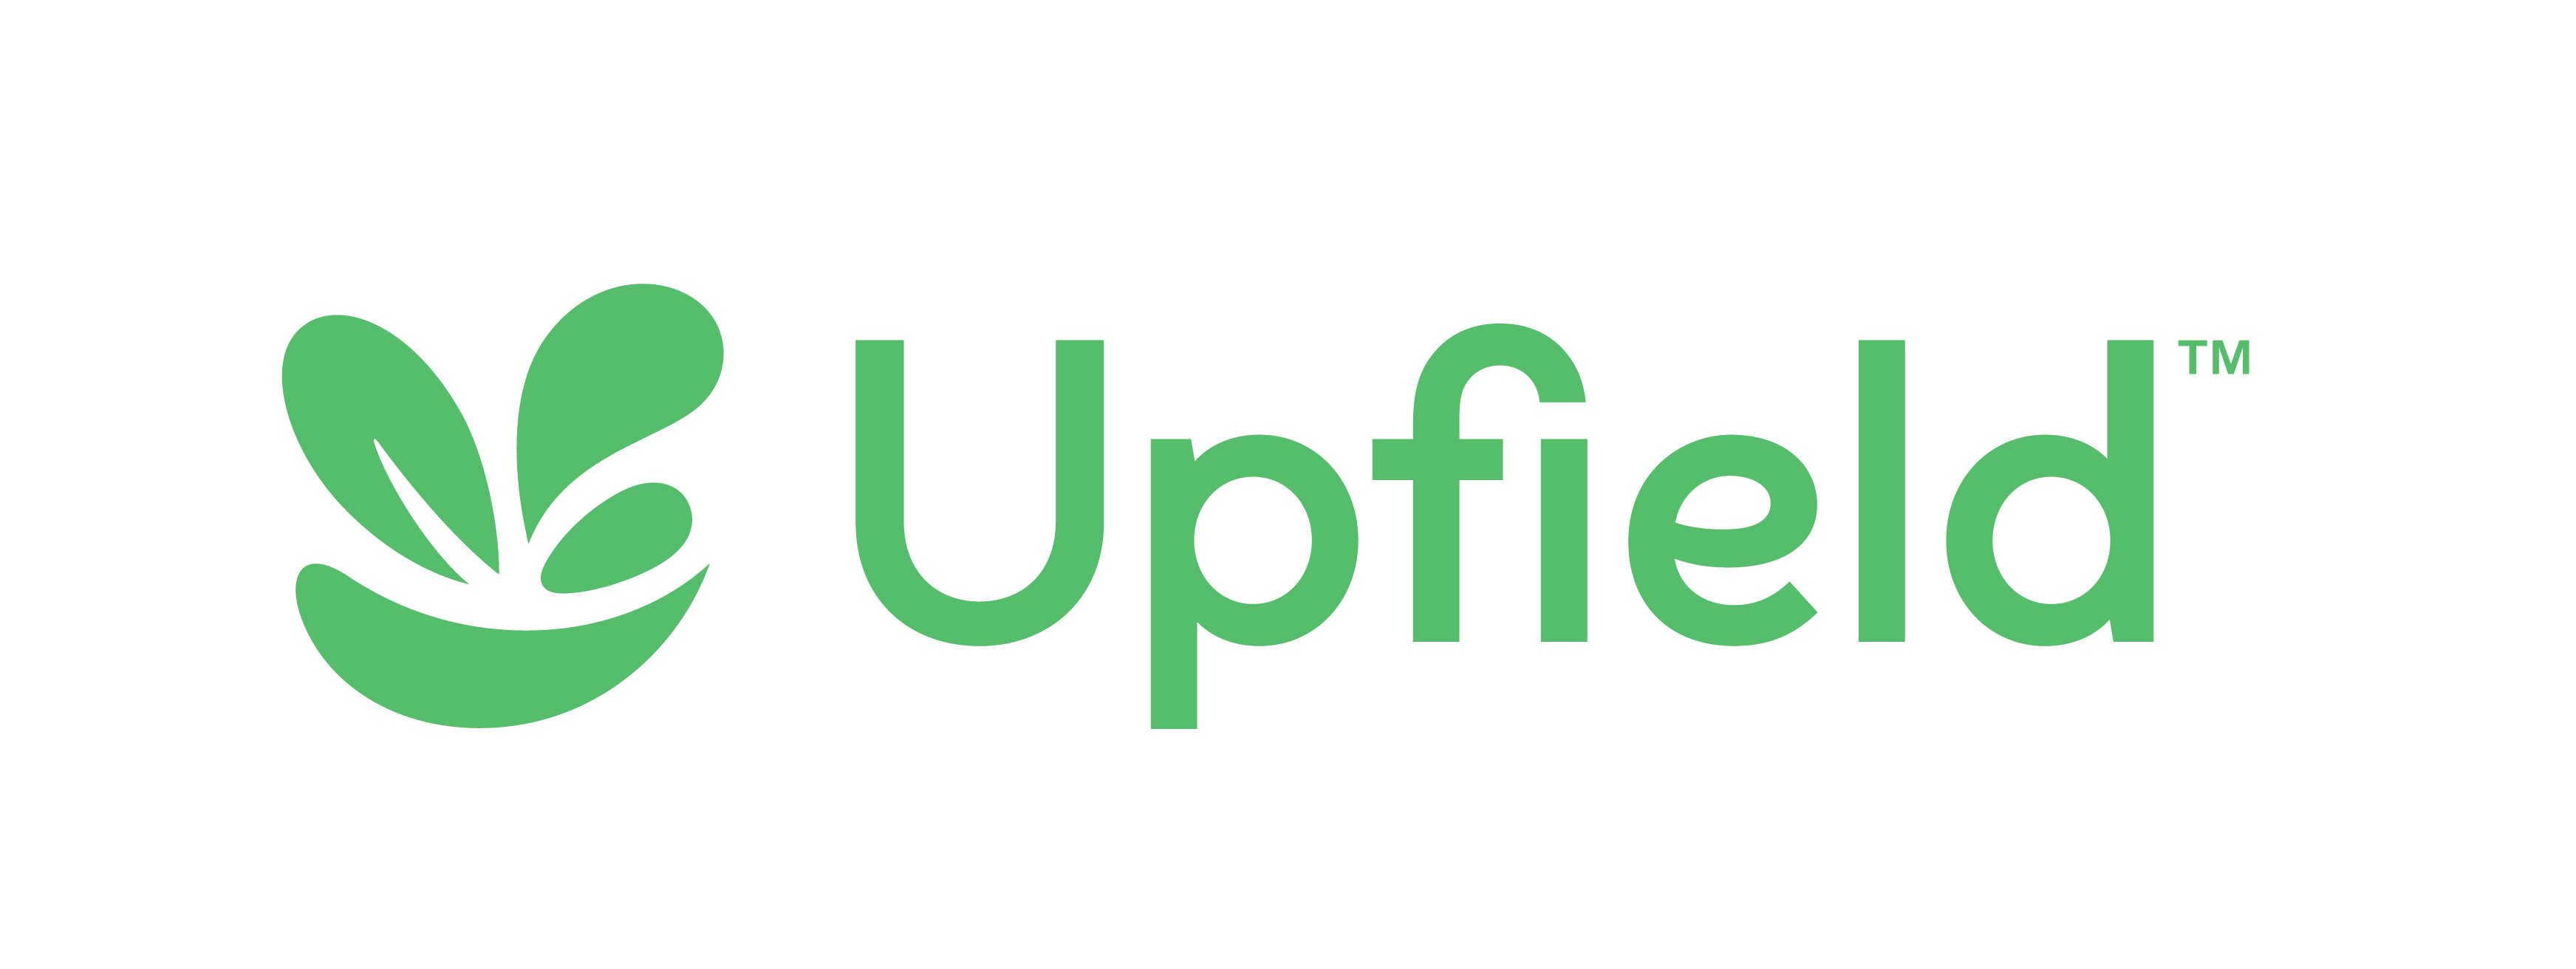 Upfield MasterLogo FreshGreen RGB